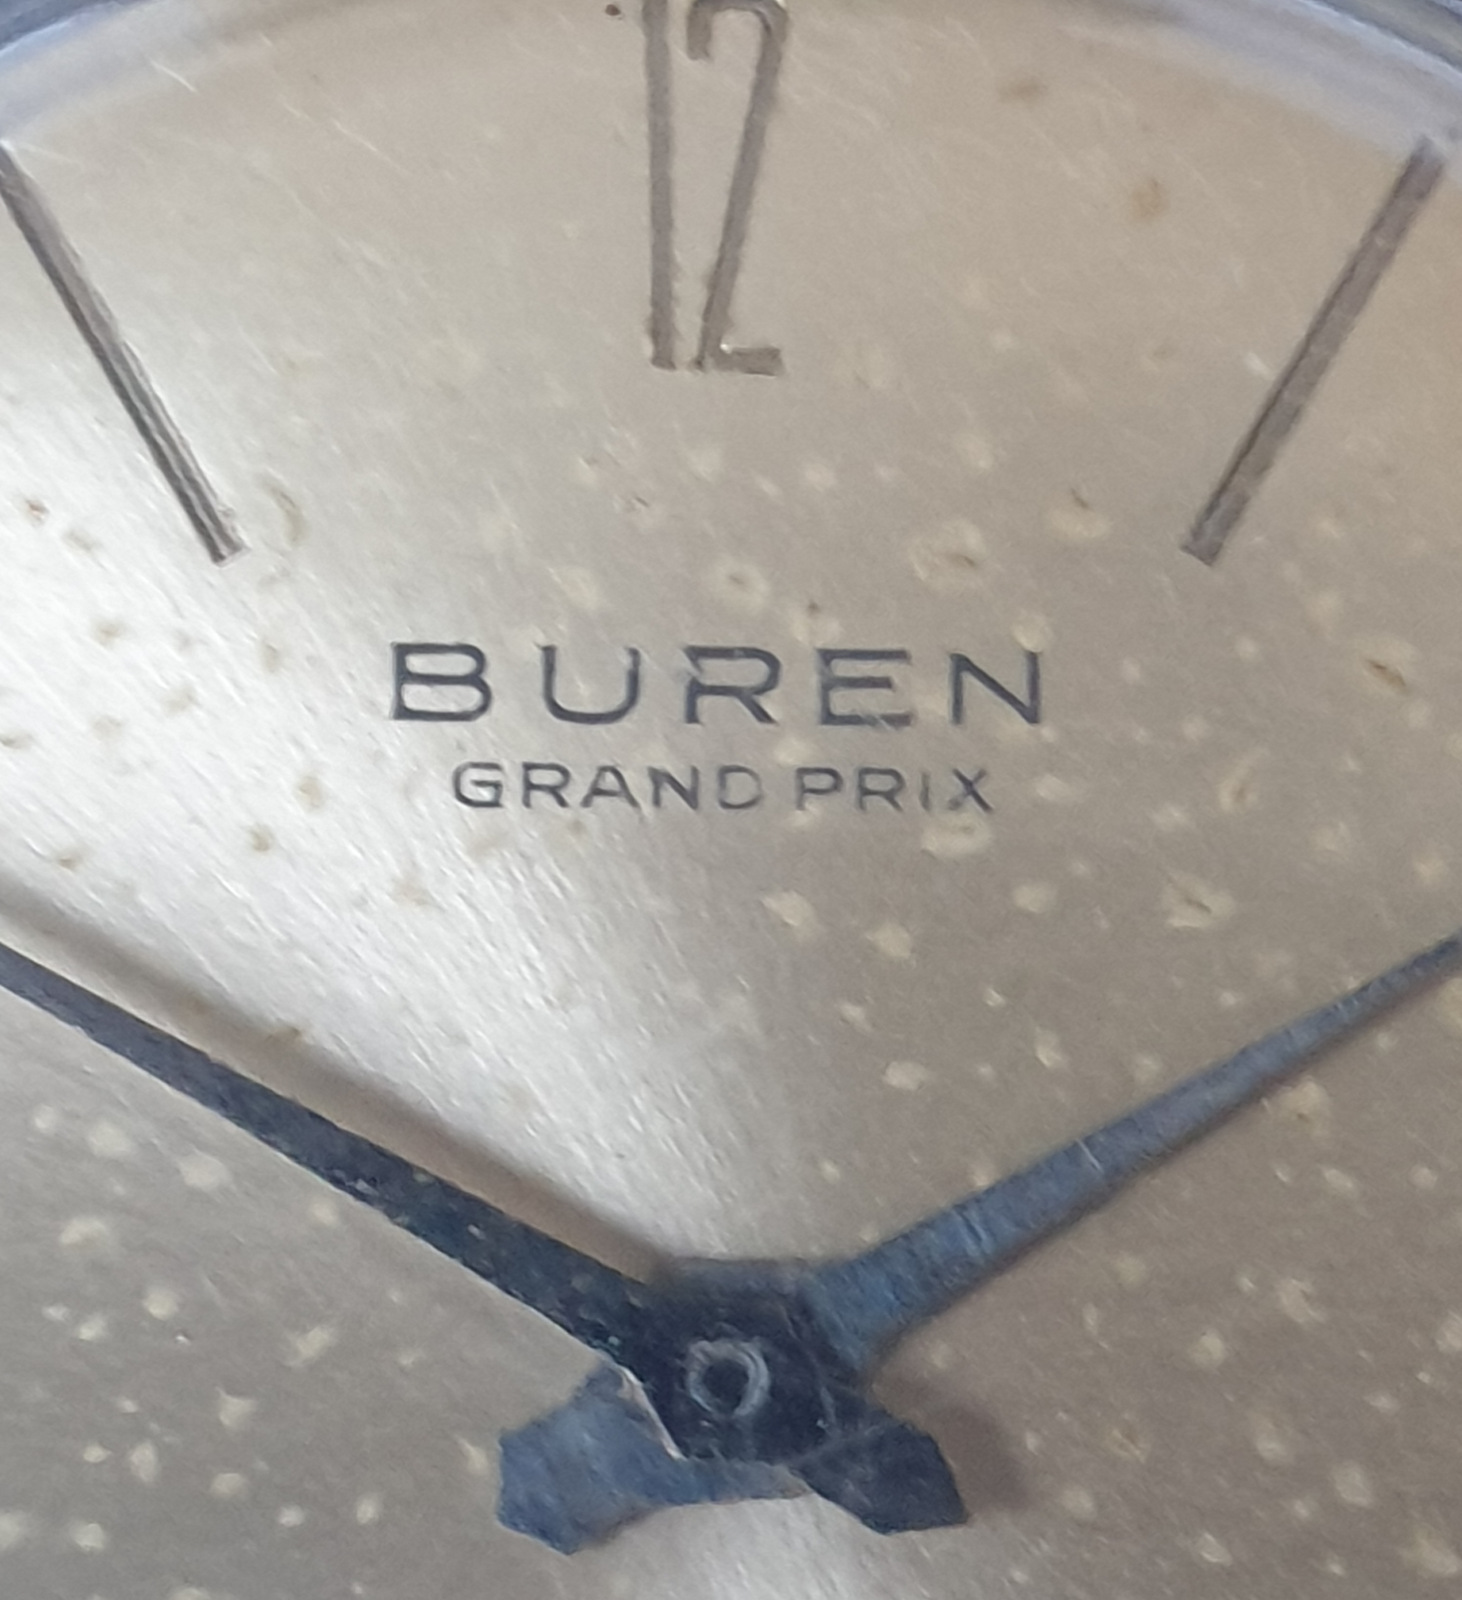 Buren Grand Prix Gent's Wristwatch - Image 3 of 5